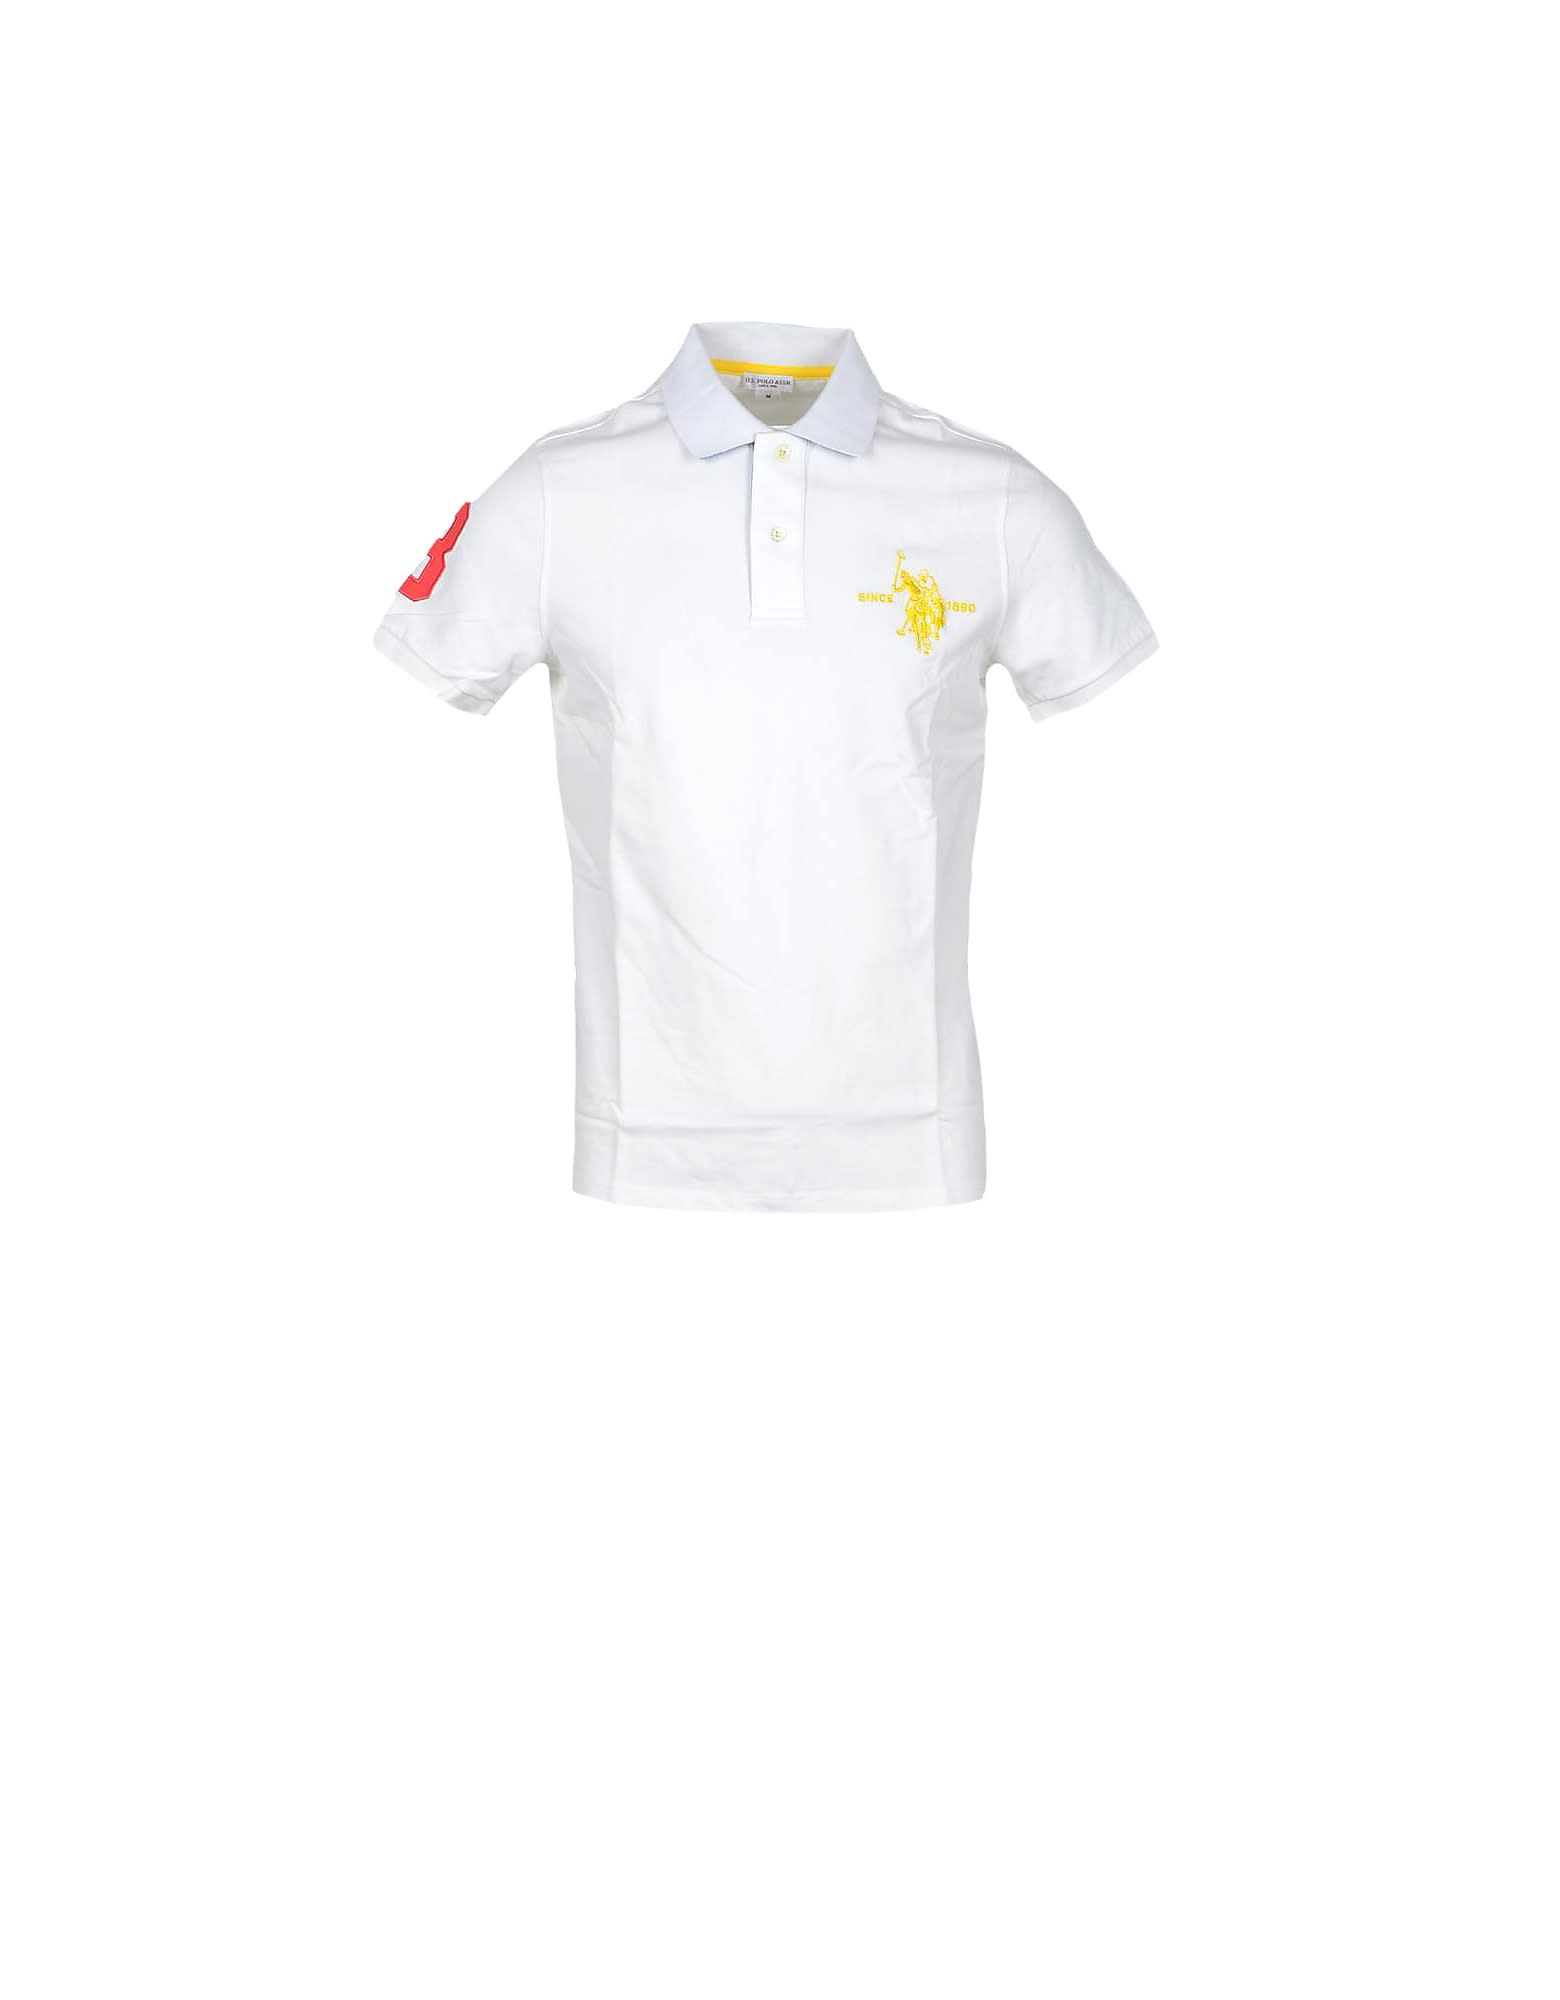 U.s. Polo Assn. White Cotton Mens Polo Shirt